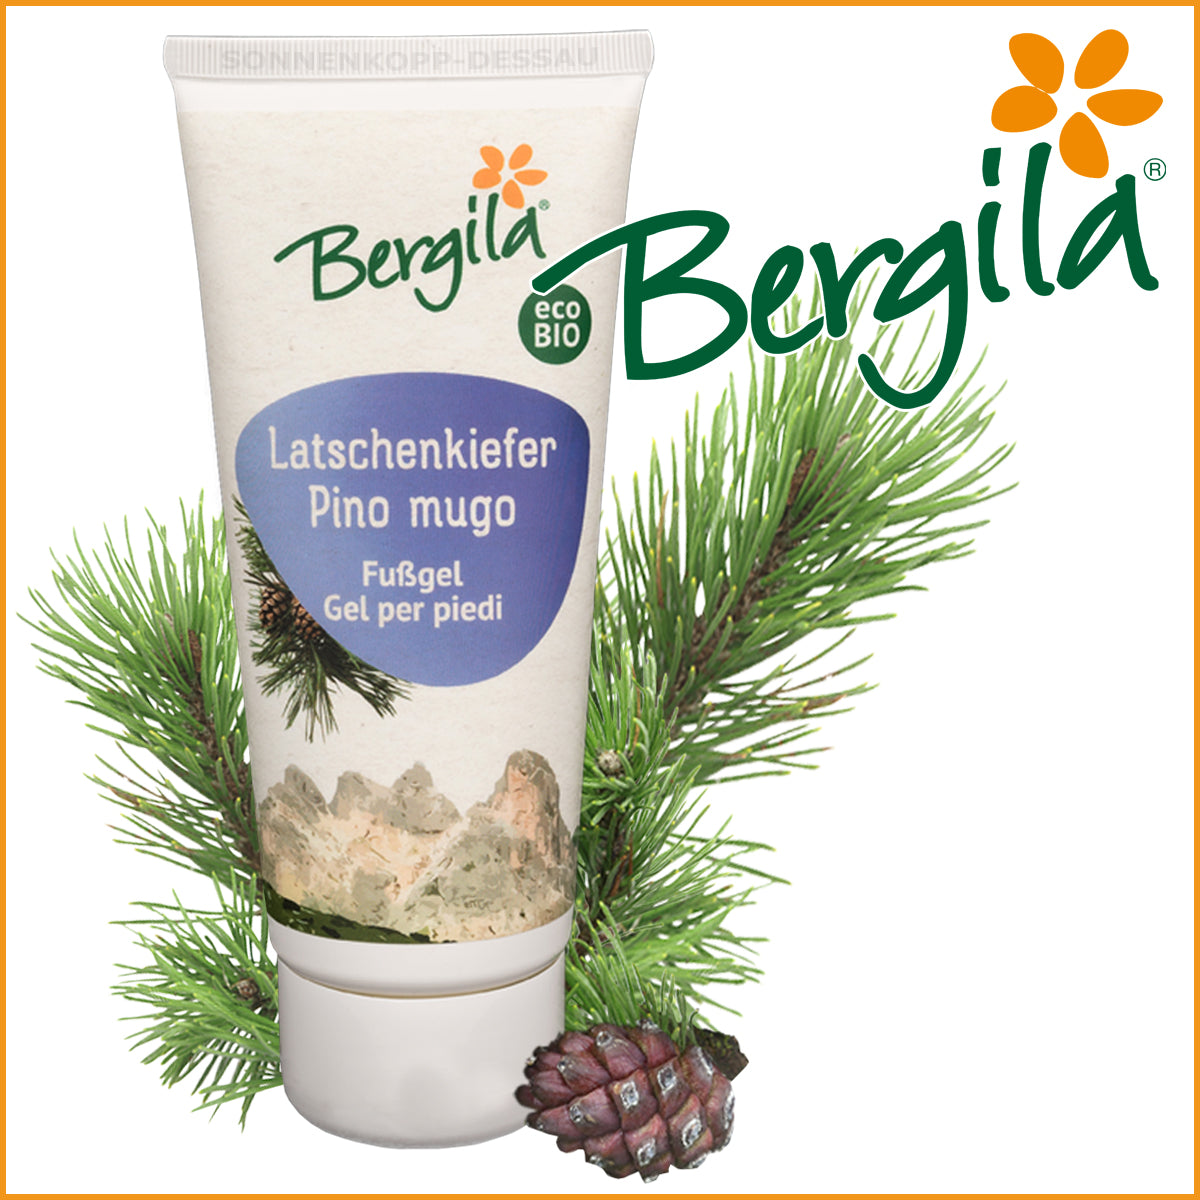 FUSSGEL mit LATSCHENKIEFER - Bergila ® BIO Produkt - Fußgel erfrischend